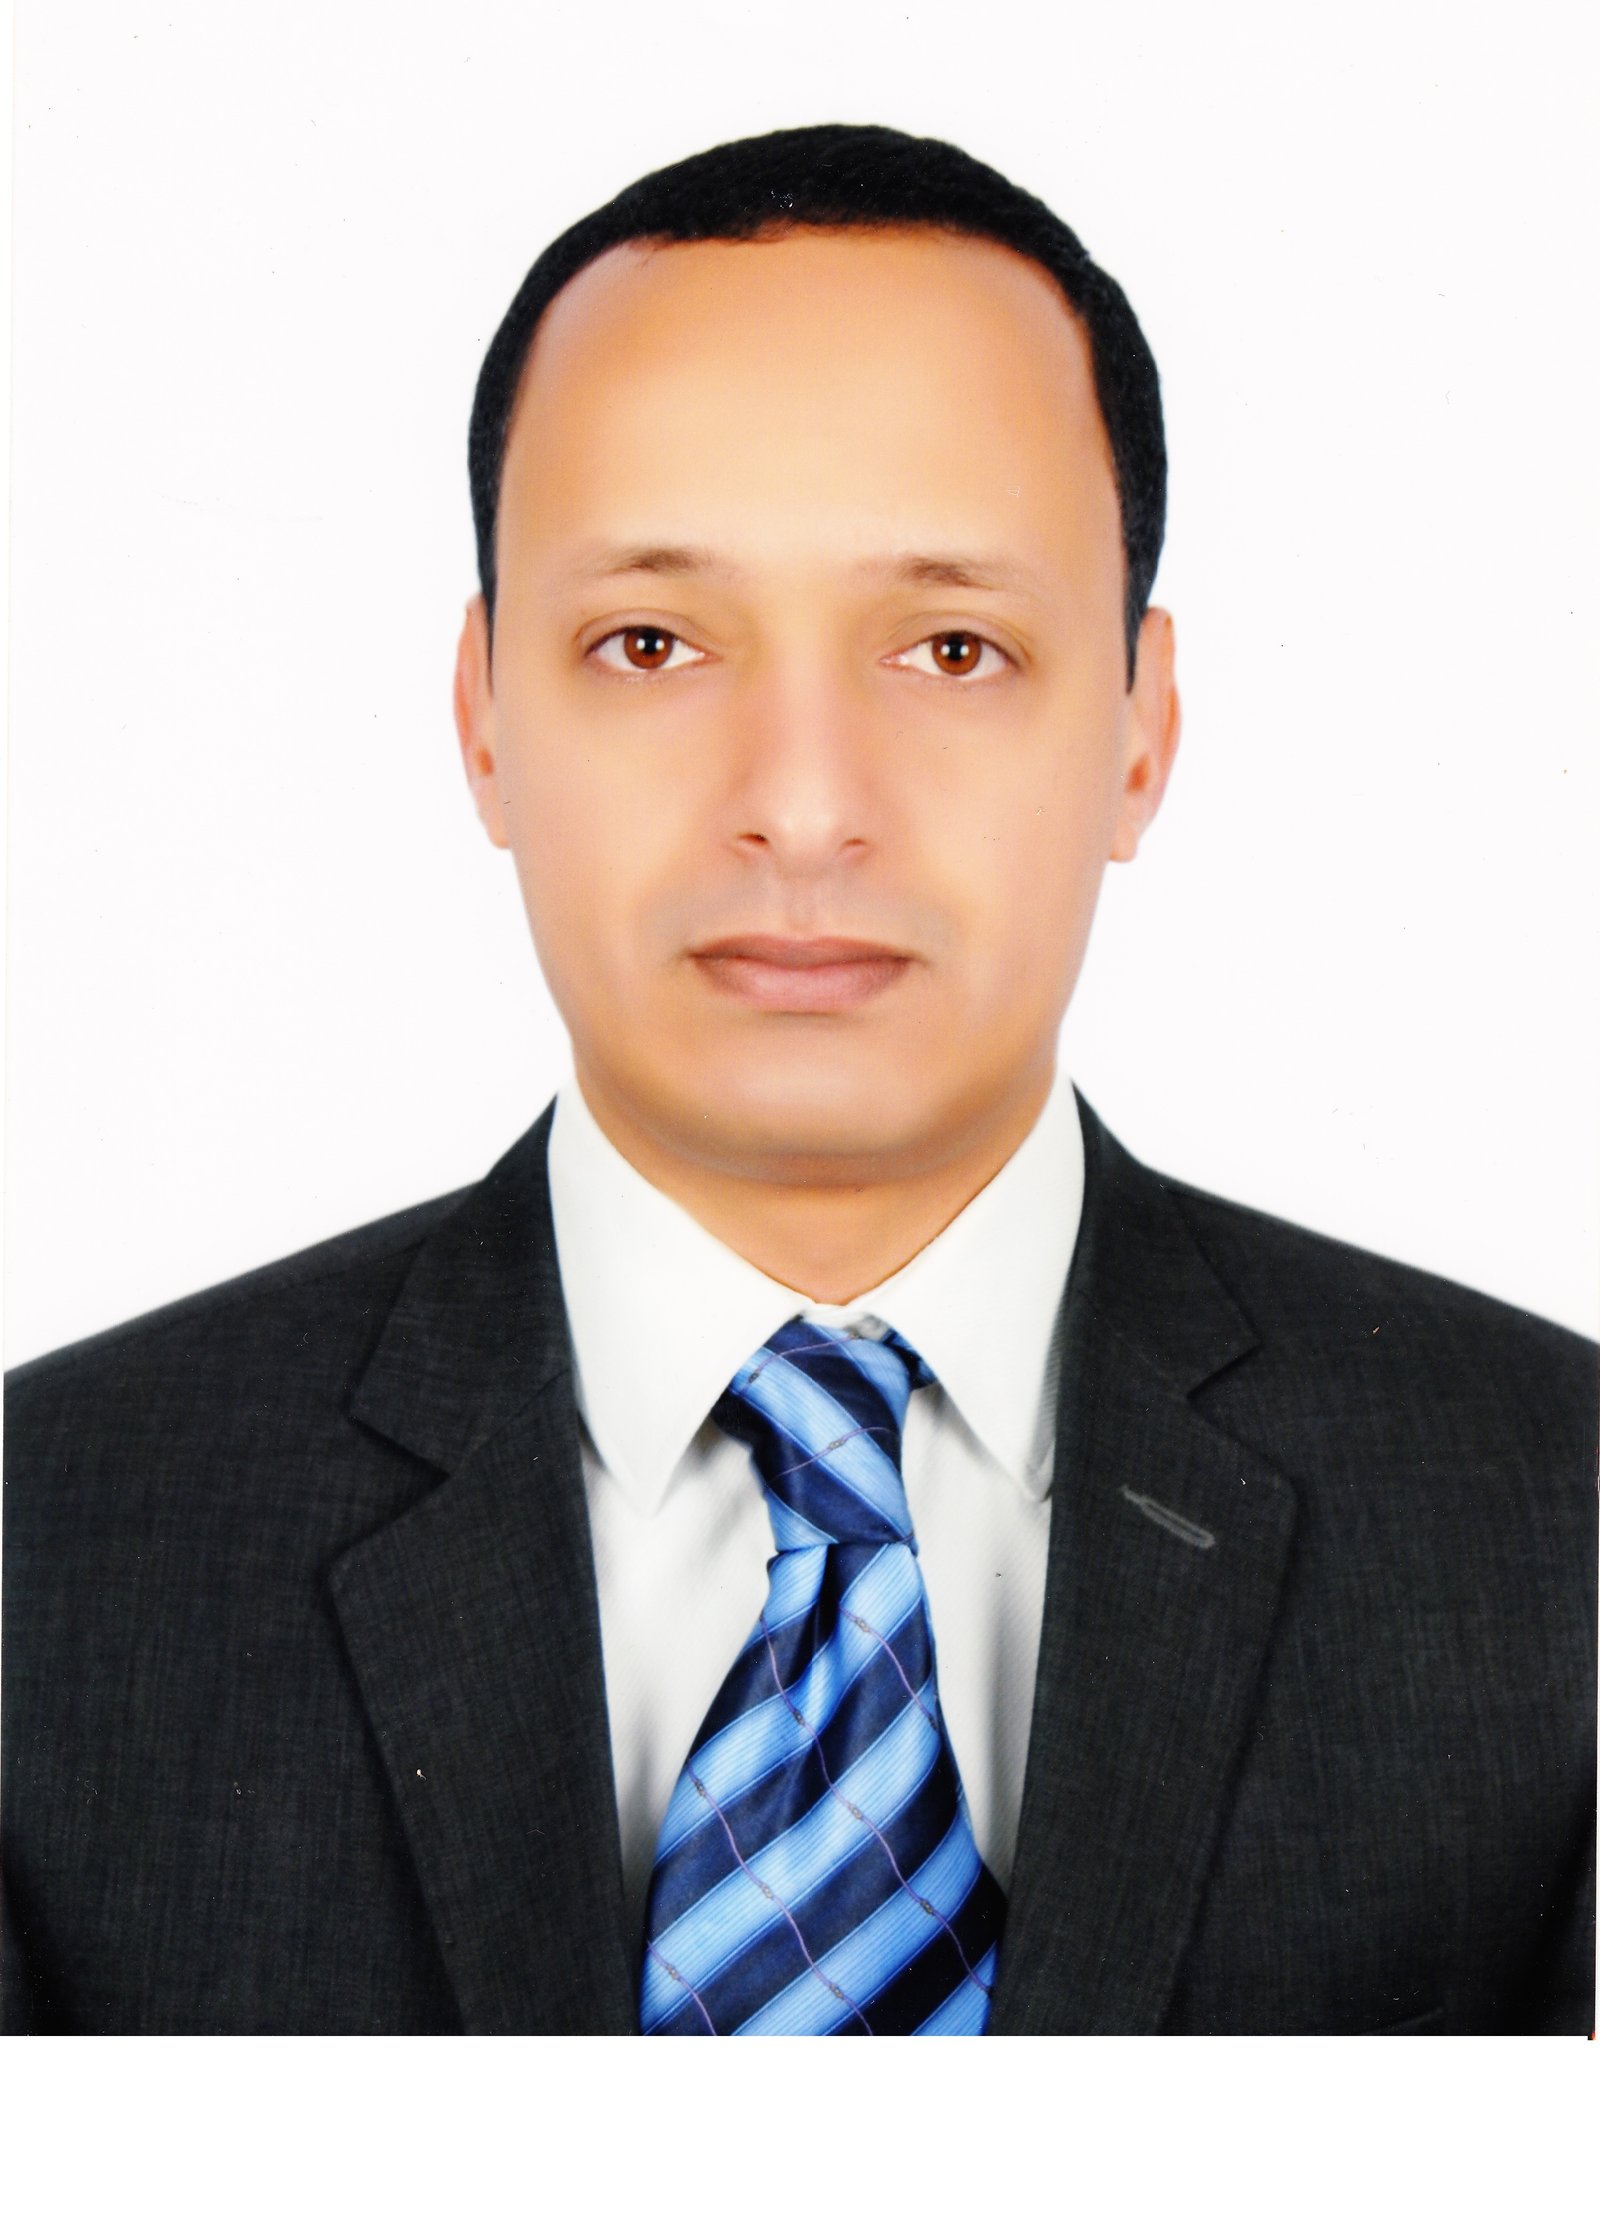 Dr. Ahmed Eid Abdelshakour Ali Kholif